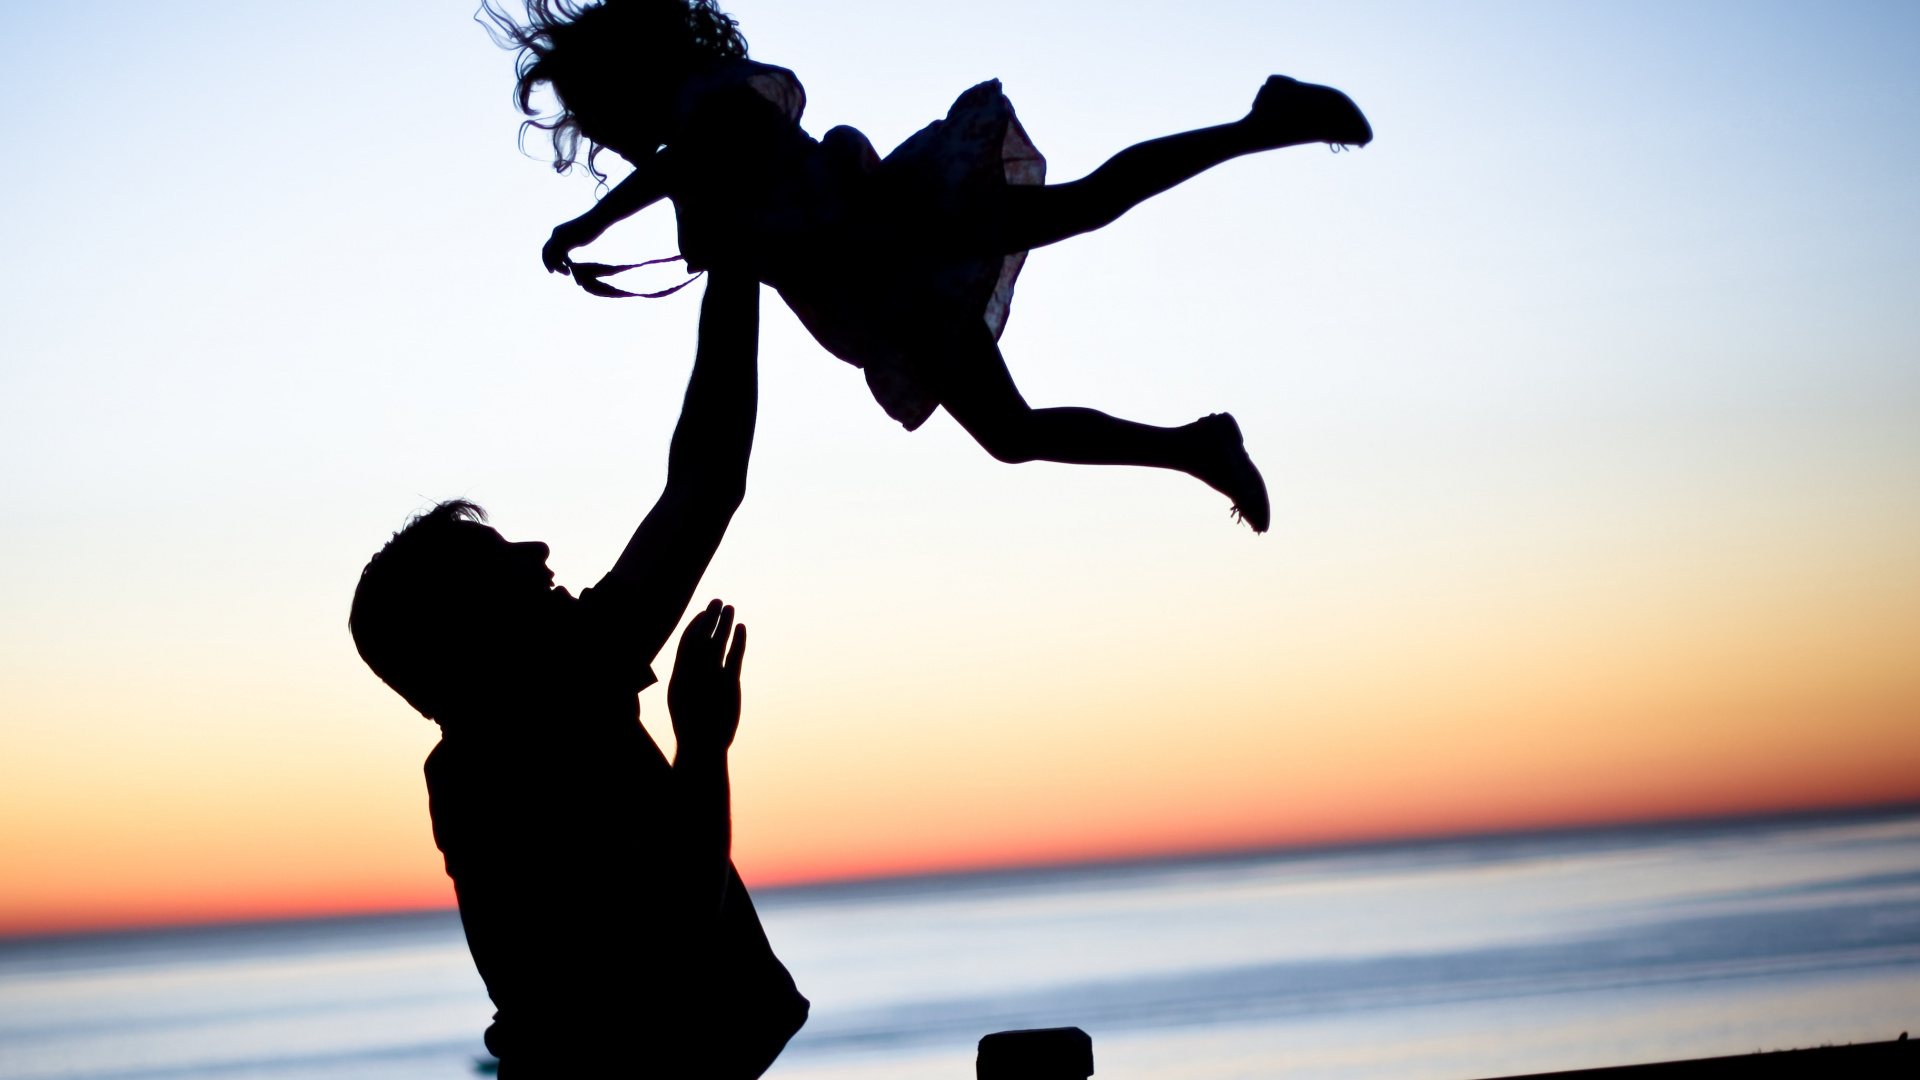 爸爸, 女儿, 家庭, 人们在自然界, 跳跃 壁纸 1920x1080 允许